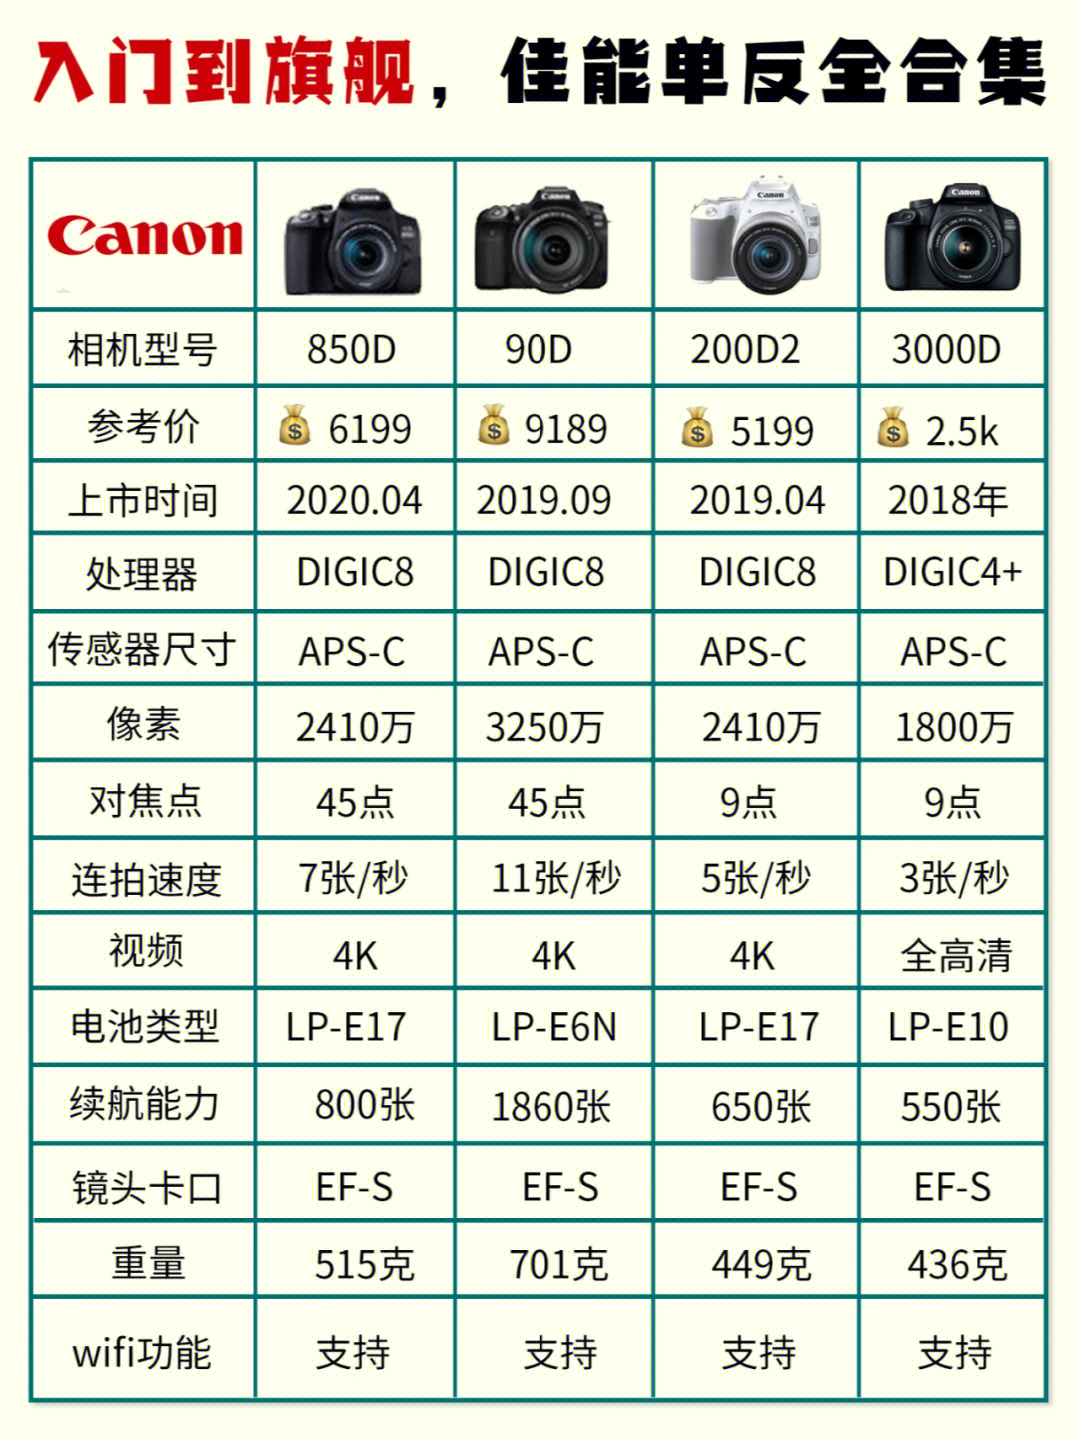 目前在产的佳能单反相机有:73全画幅单反:佳能1dxiii,佳能5div,佳能